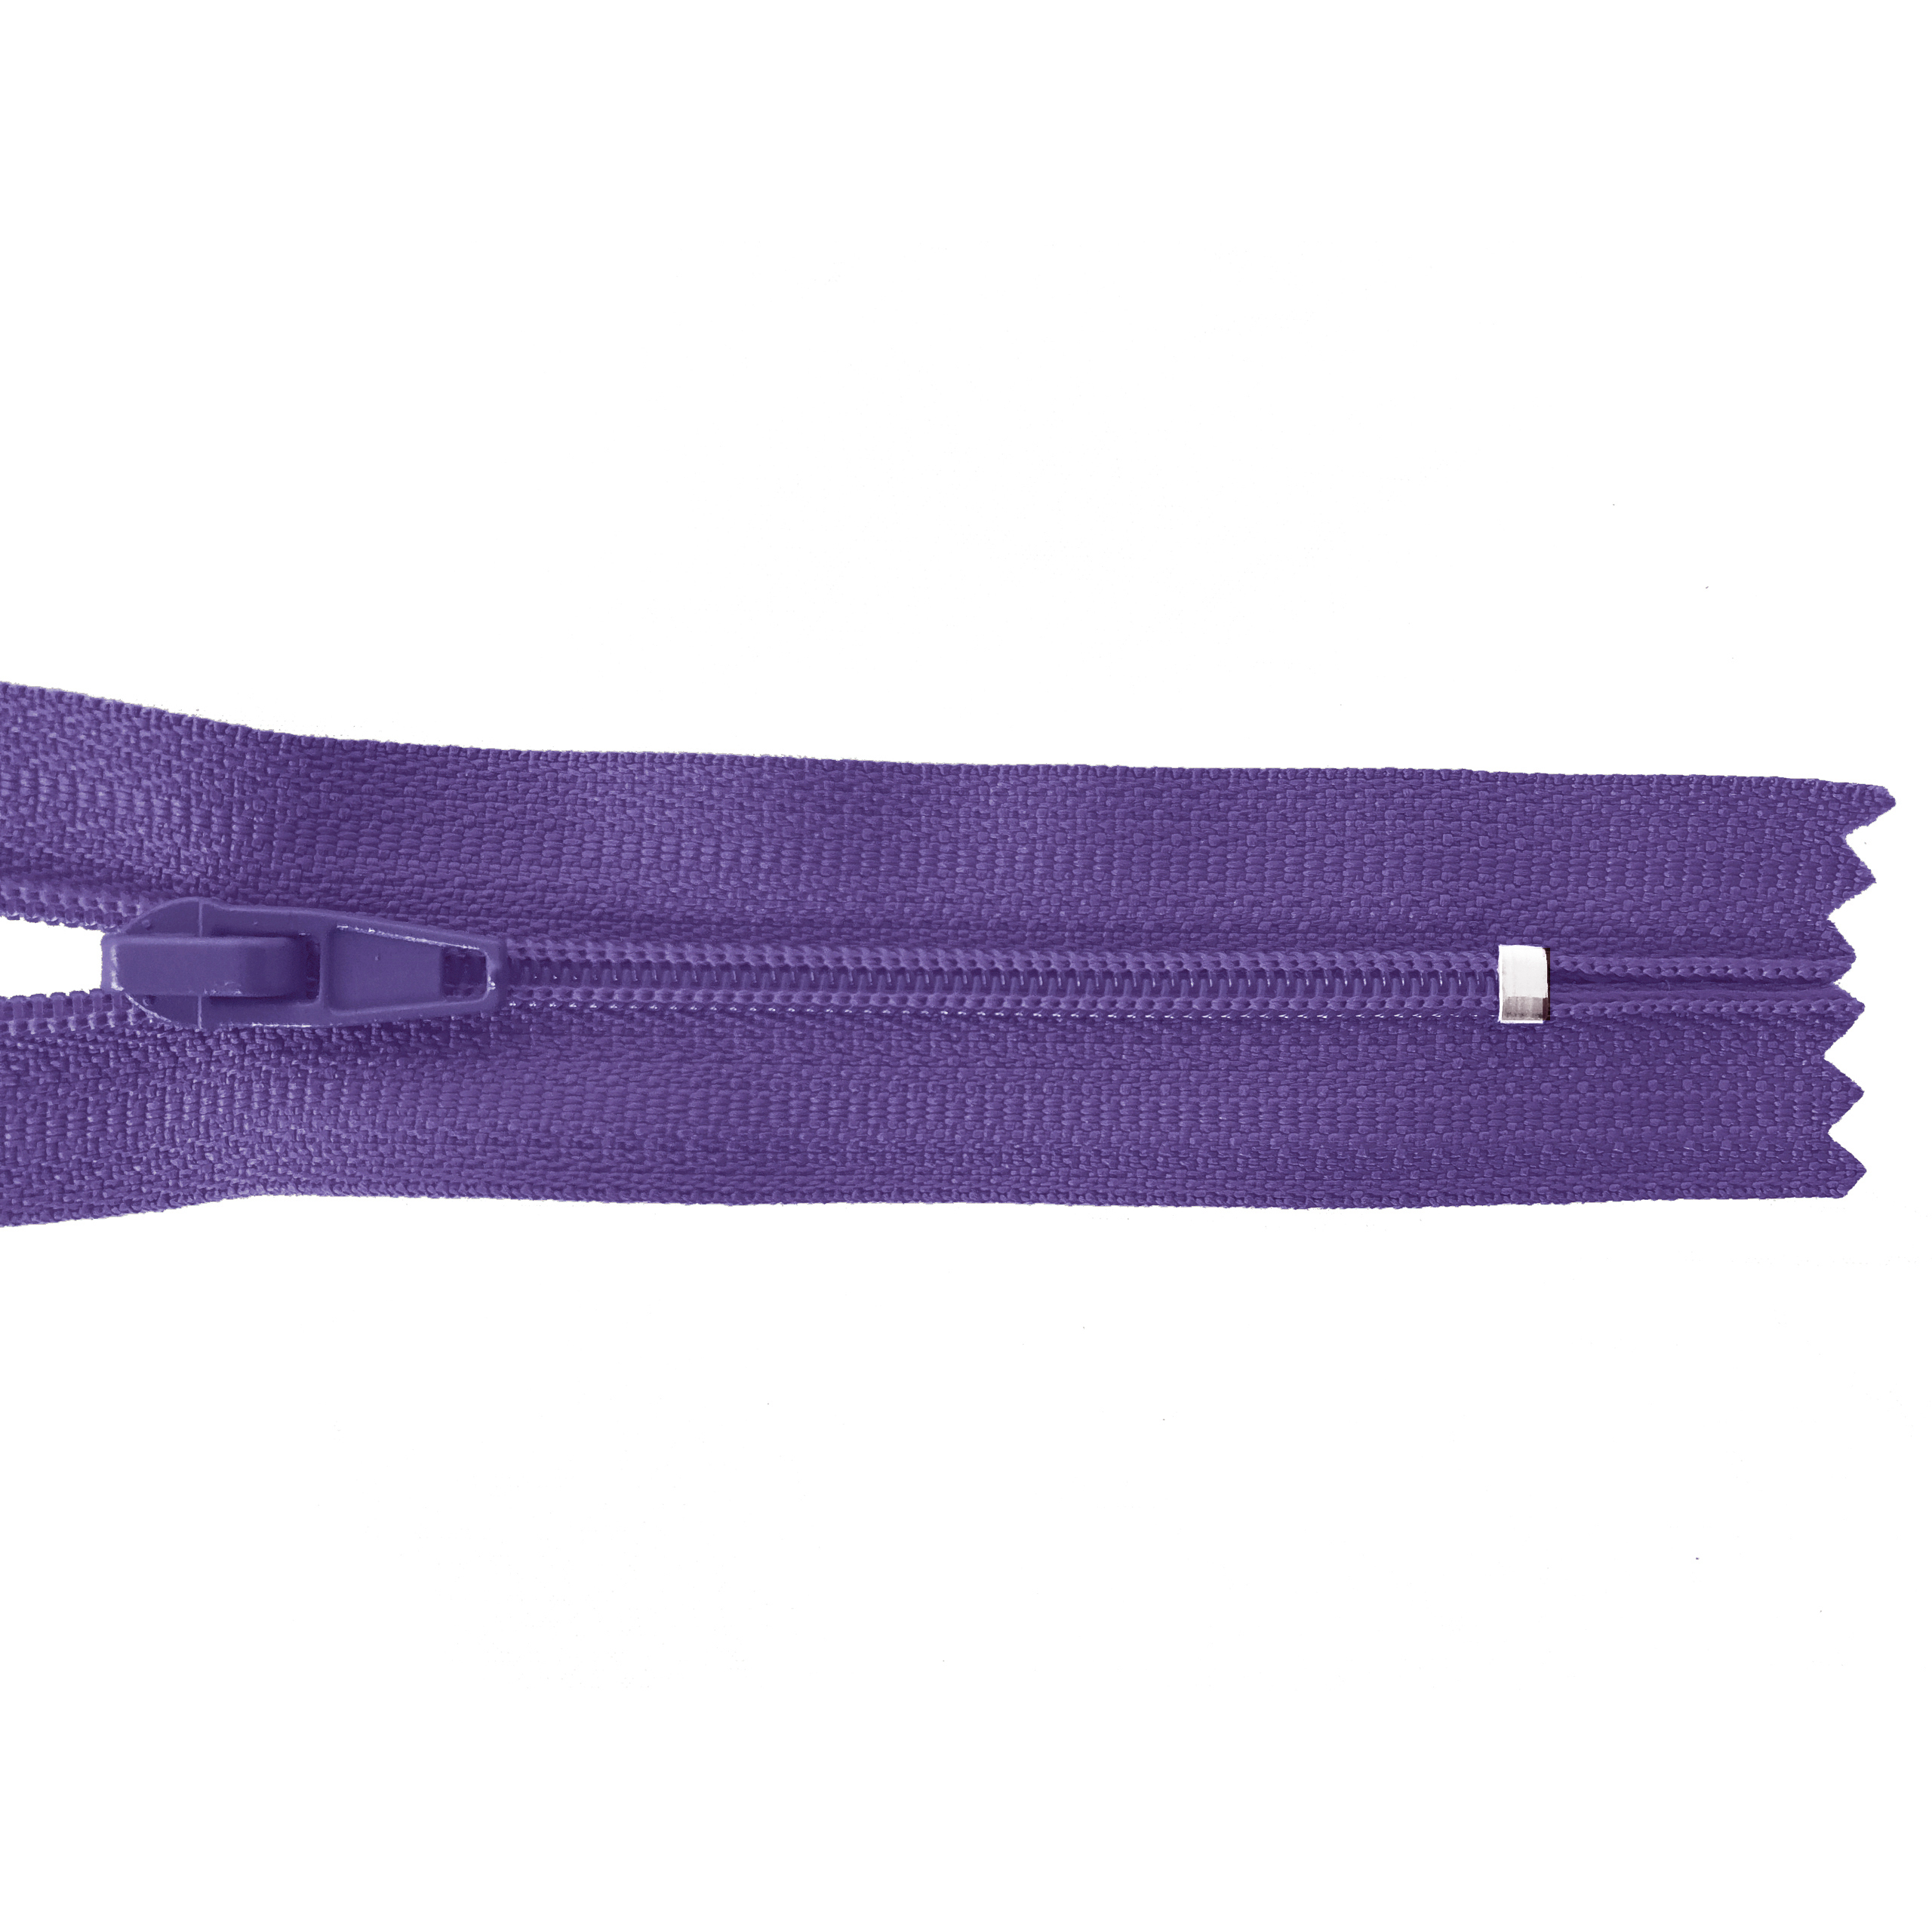 Reißverschluss nicht teilbar, PES-Spirale fein, violett, hochwertiger Marken-Reißverschluss von Rubi/Barcelona